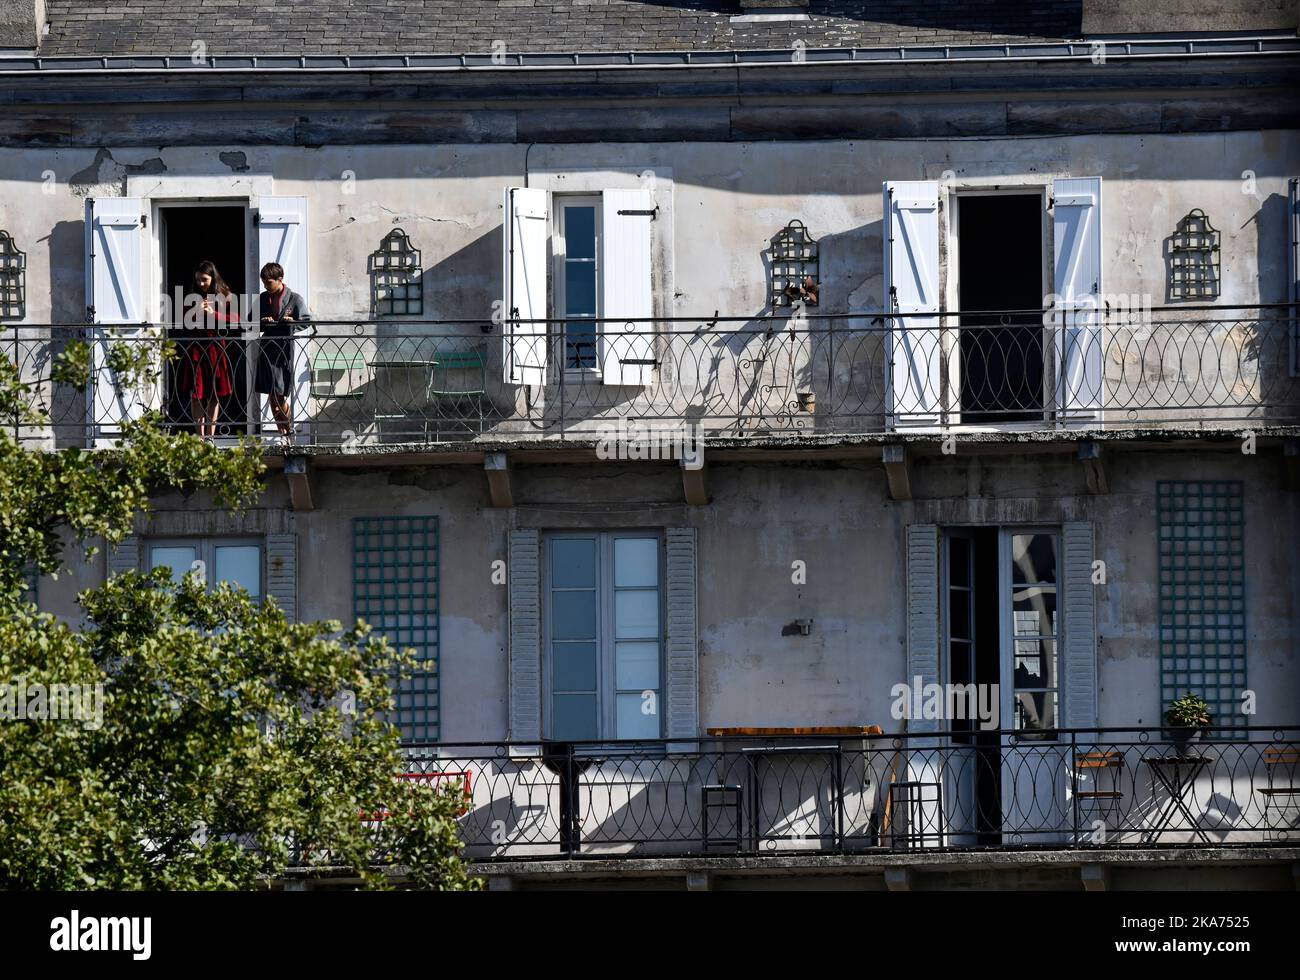 Appartements anciens avec balcon à Pau, France Banque D'Images